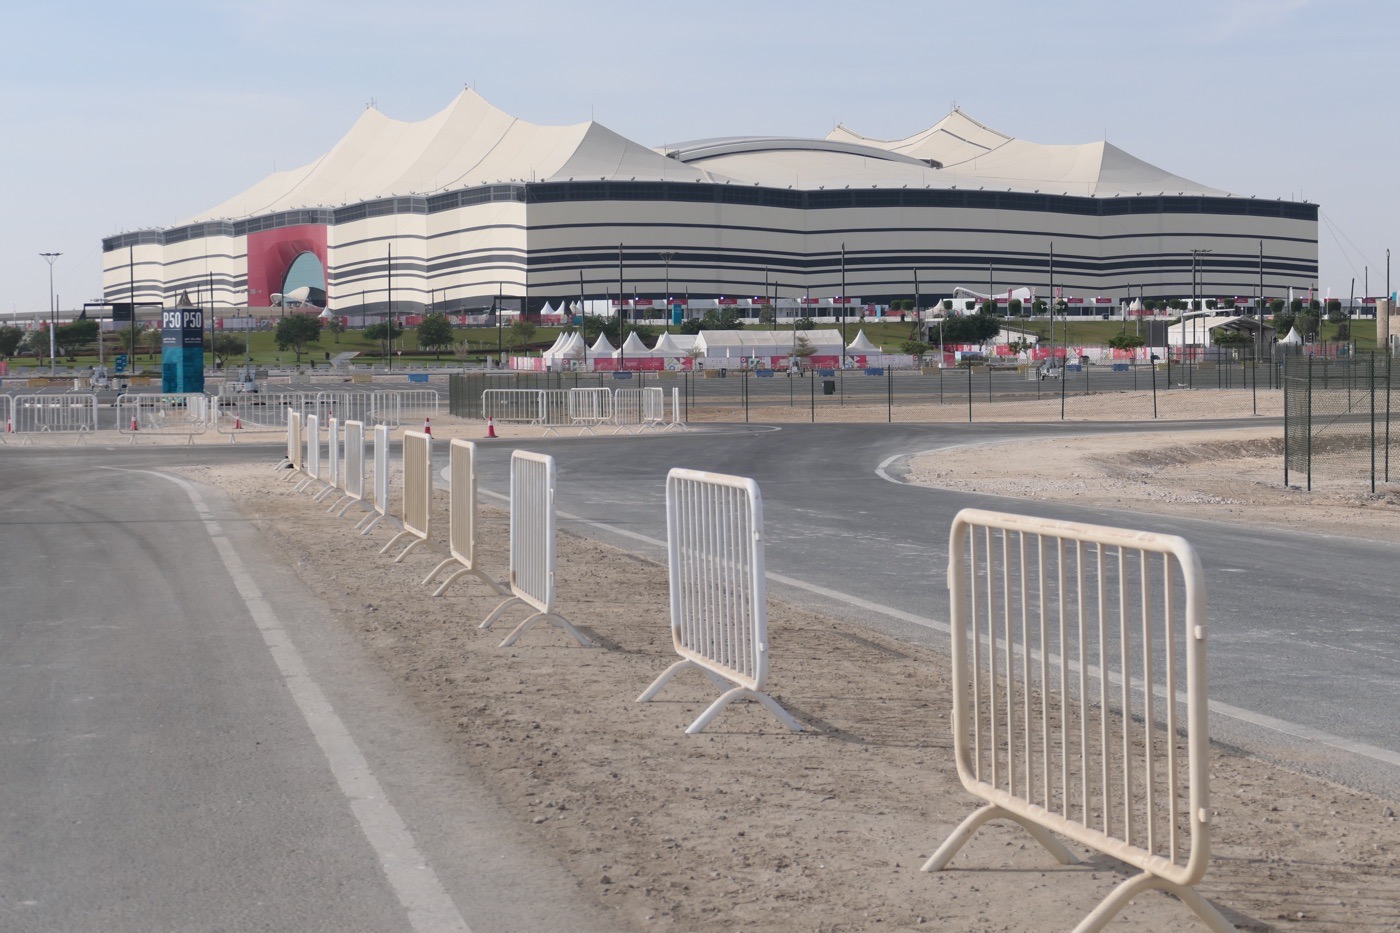 Das Al Bayt WM Stadion im Nordne von Katar - hier findet das WM Eröffnungsspiel zwischen Katar und Ecuador statt! 